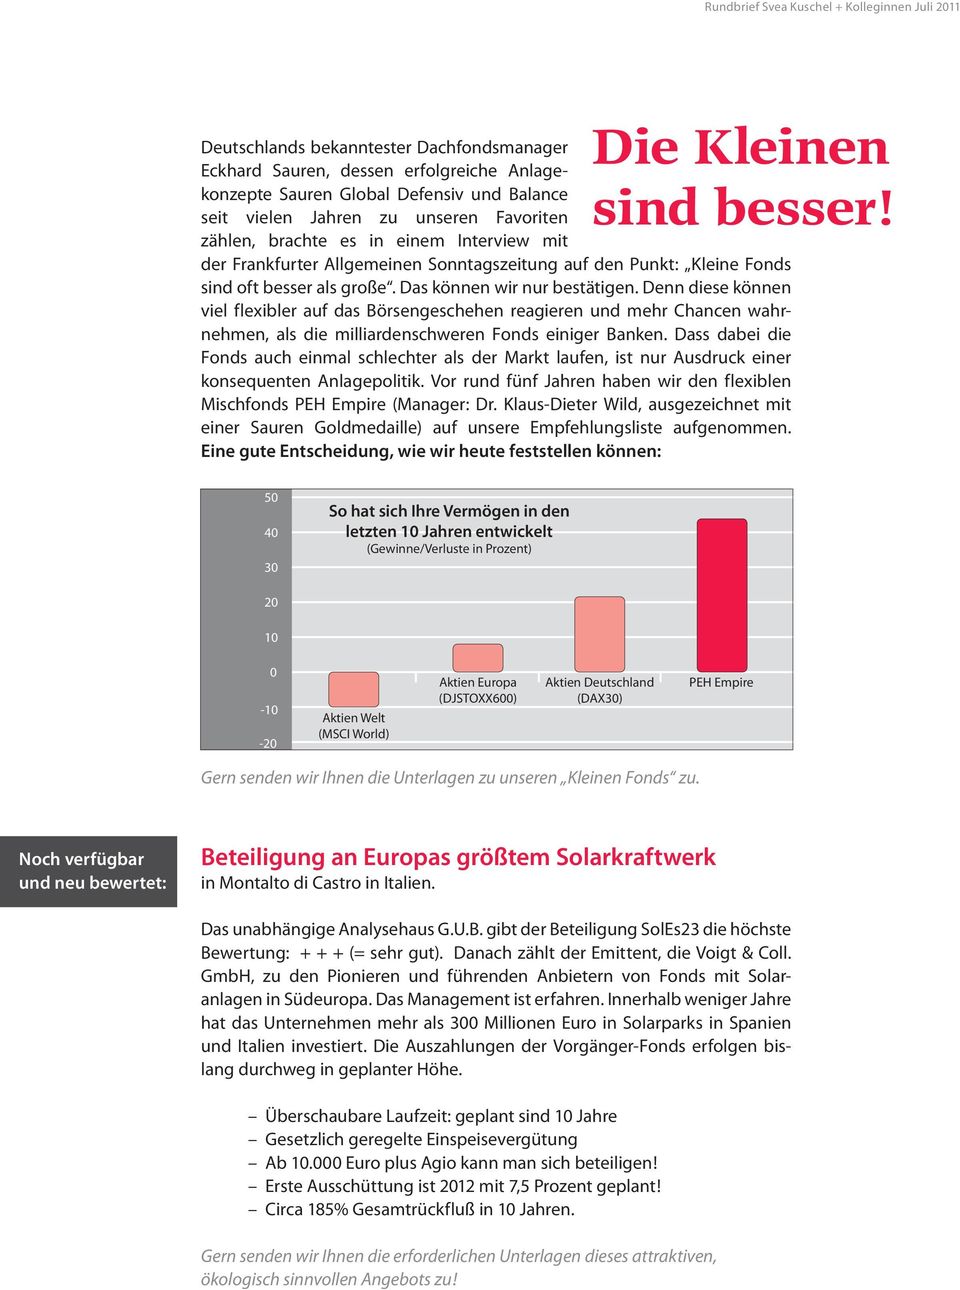 Interview mit der Frankfurter Allgemeinen Sonntagszeitung auf den Punkt: Kleine Fonds sind oft besser als große. Das können wir nur bestätigen.